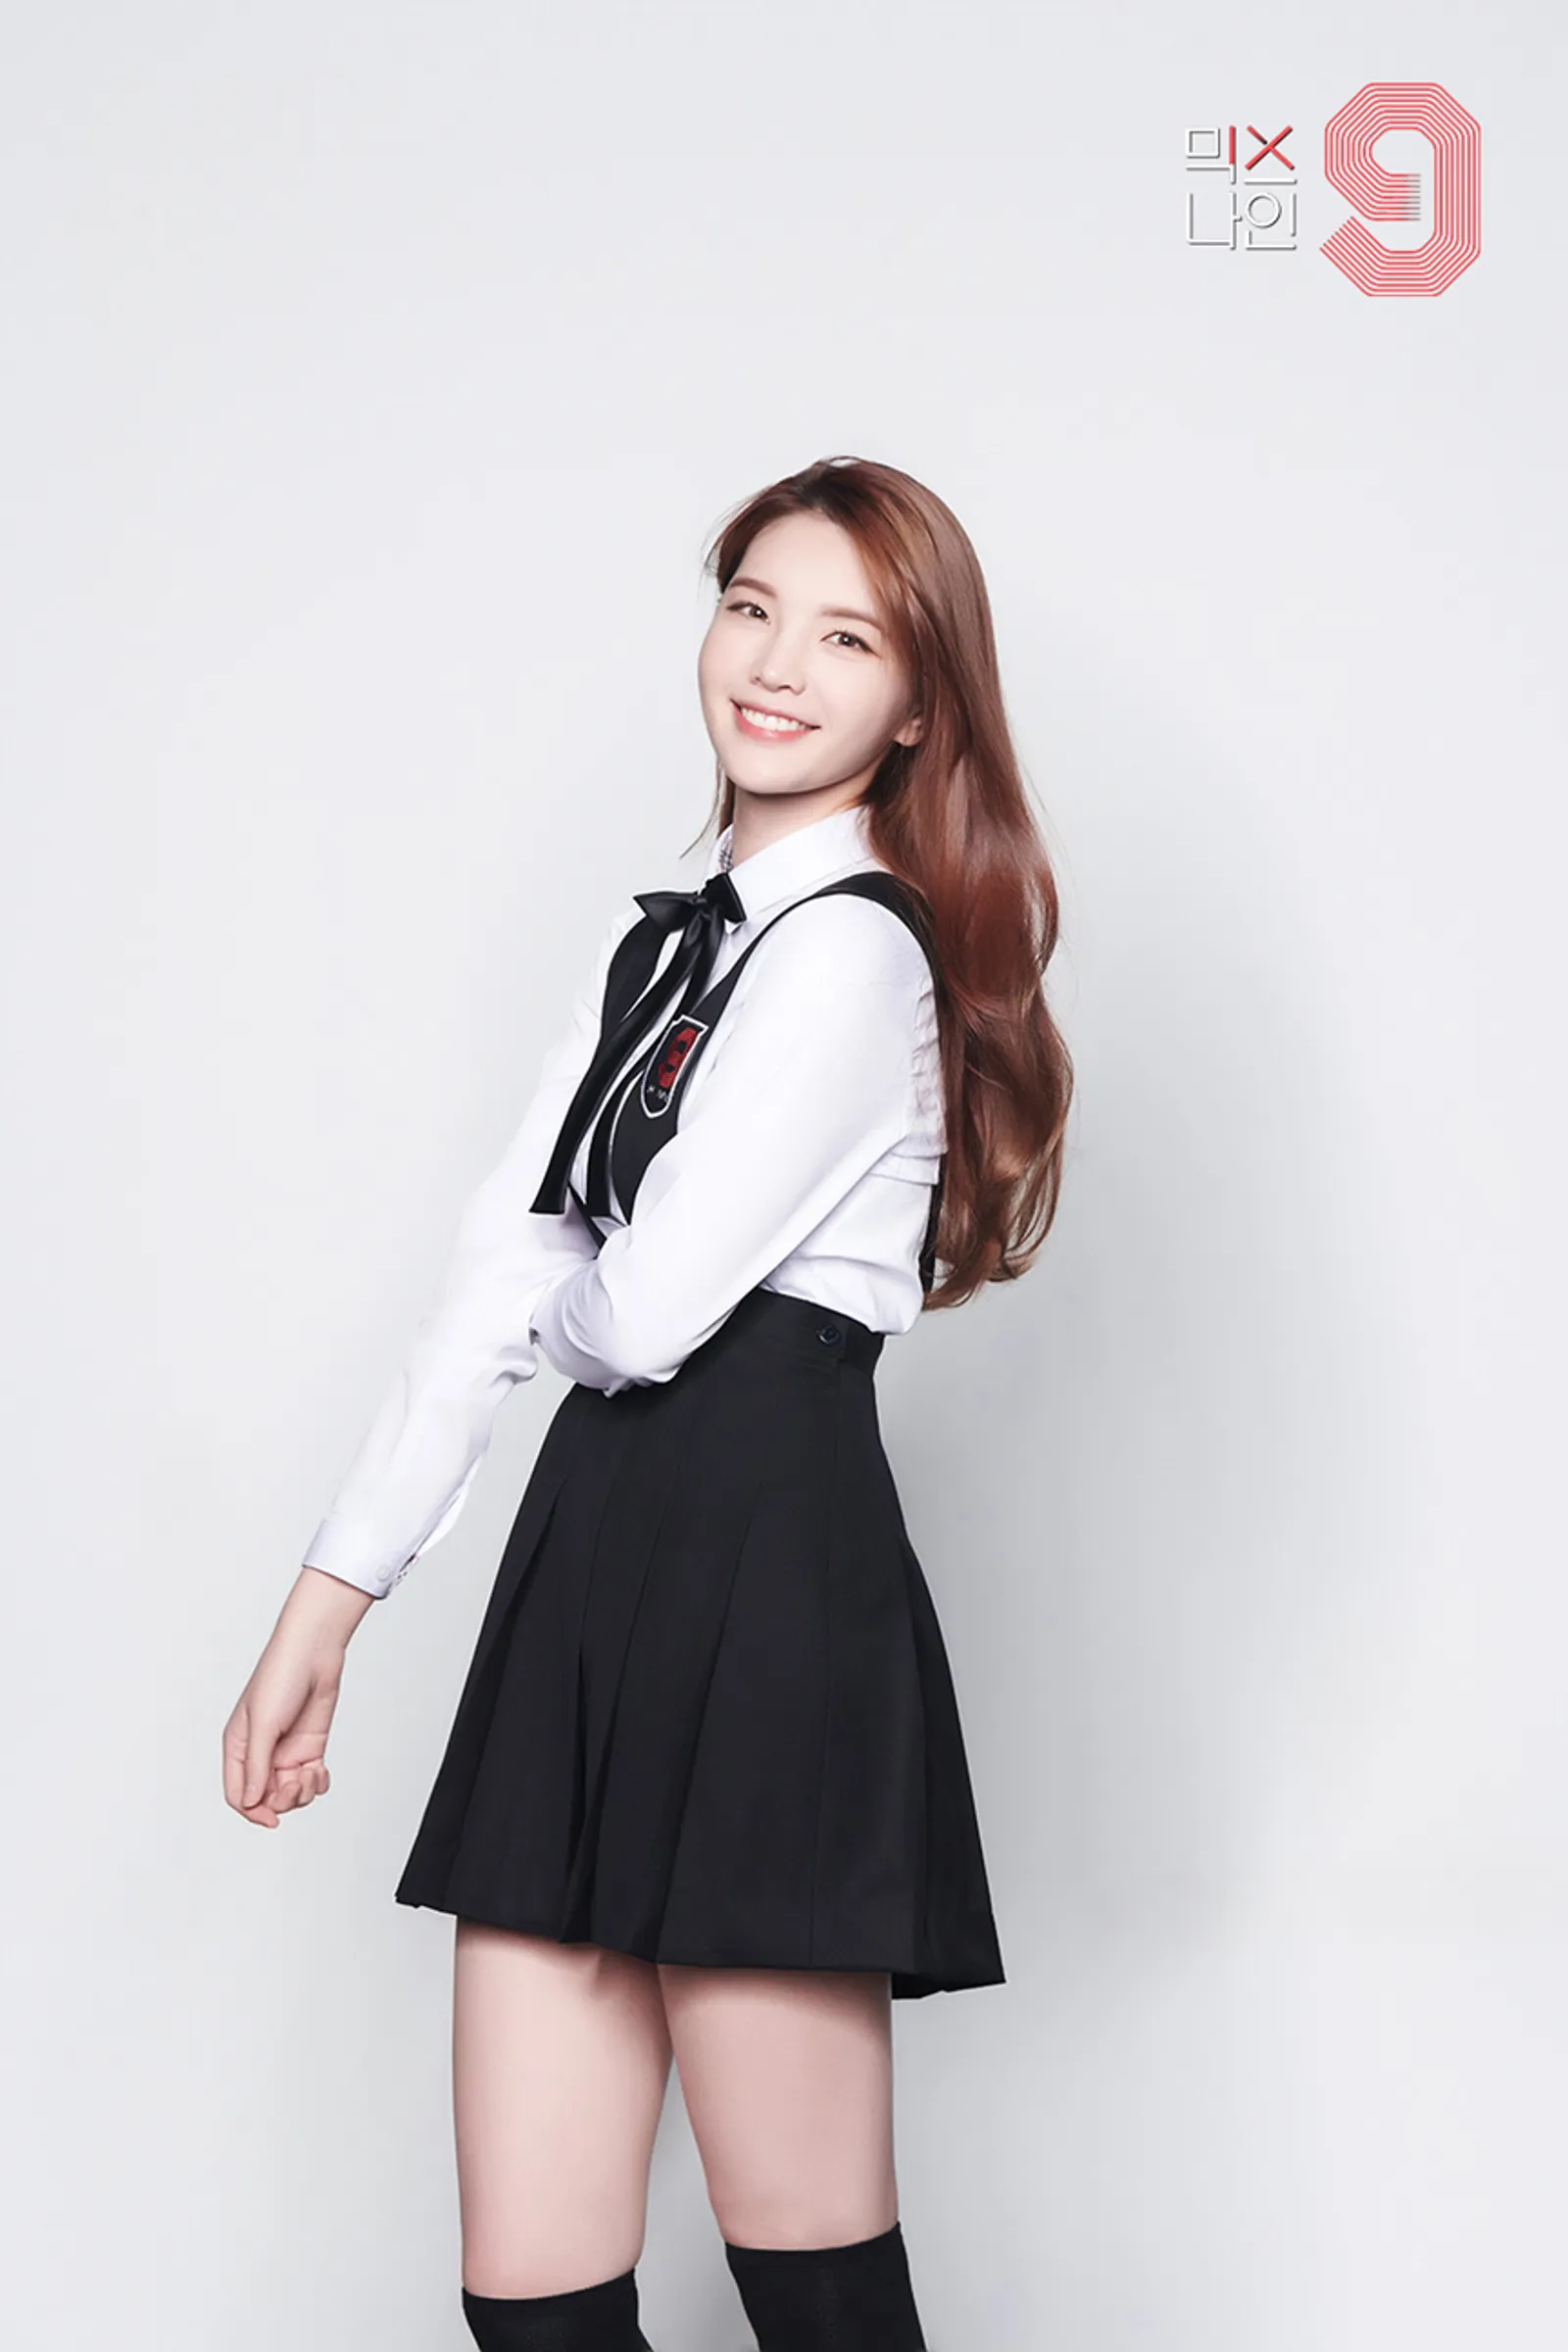 Profil Xöoos, Penyanyi Muda yang Dikabarkan Jadi Pacar Park Seo Joon